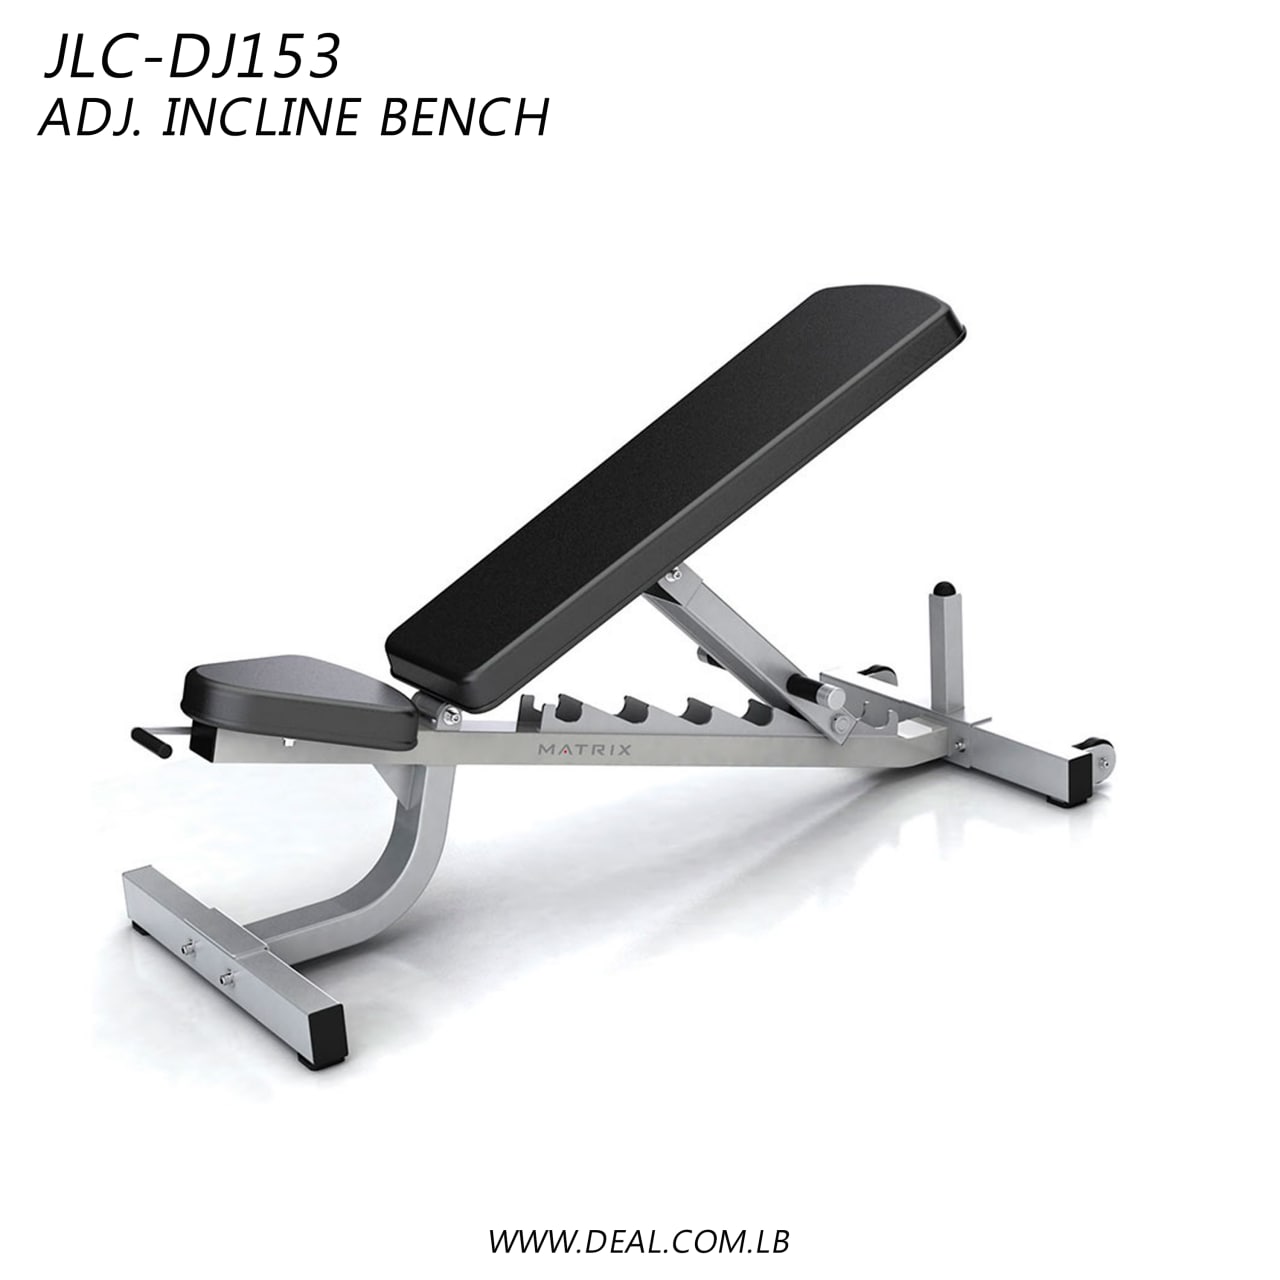 JLC-DJ153 | Adj. Incline Bench